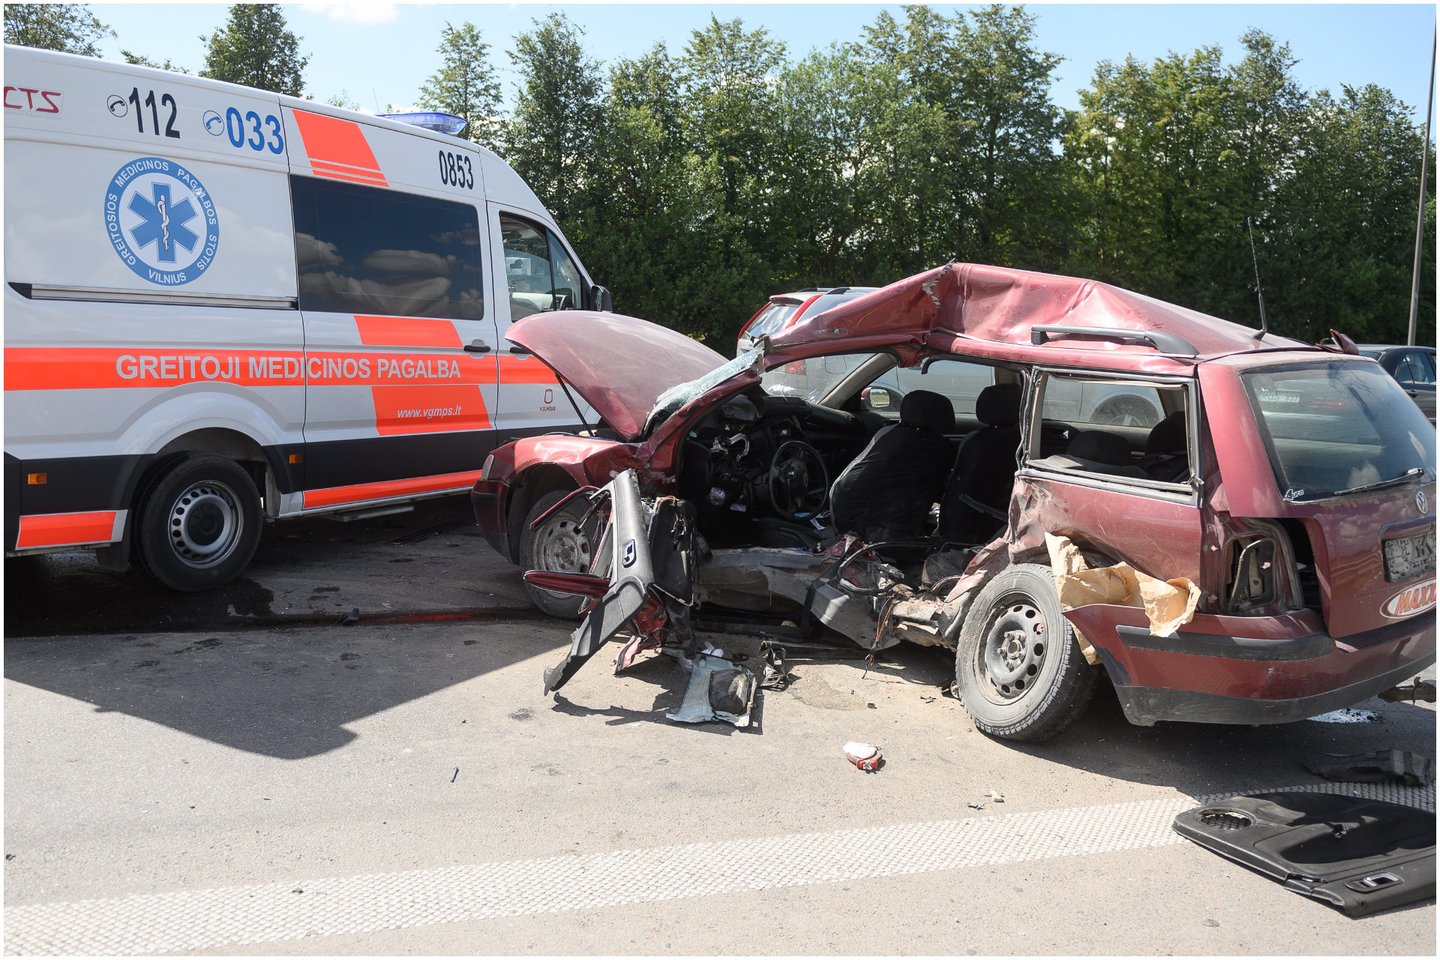  Per avariją susidūrus 4 automobiliams, žuvo 62 metų vyras. Penki sužeisti žmonės buvo nuvežti į ligoninę. <br> A.Vaitkevičiaus asociatyvioji nuotr. 